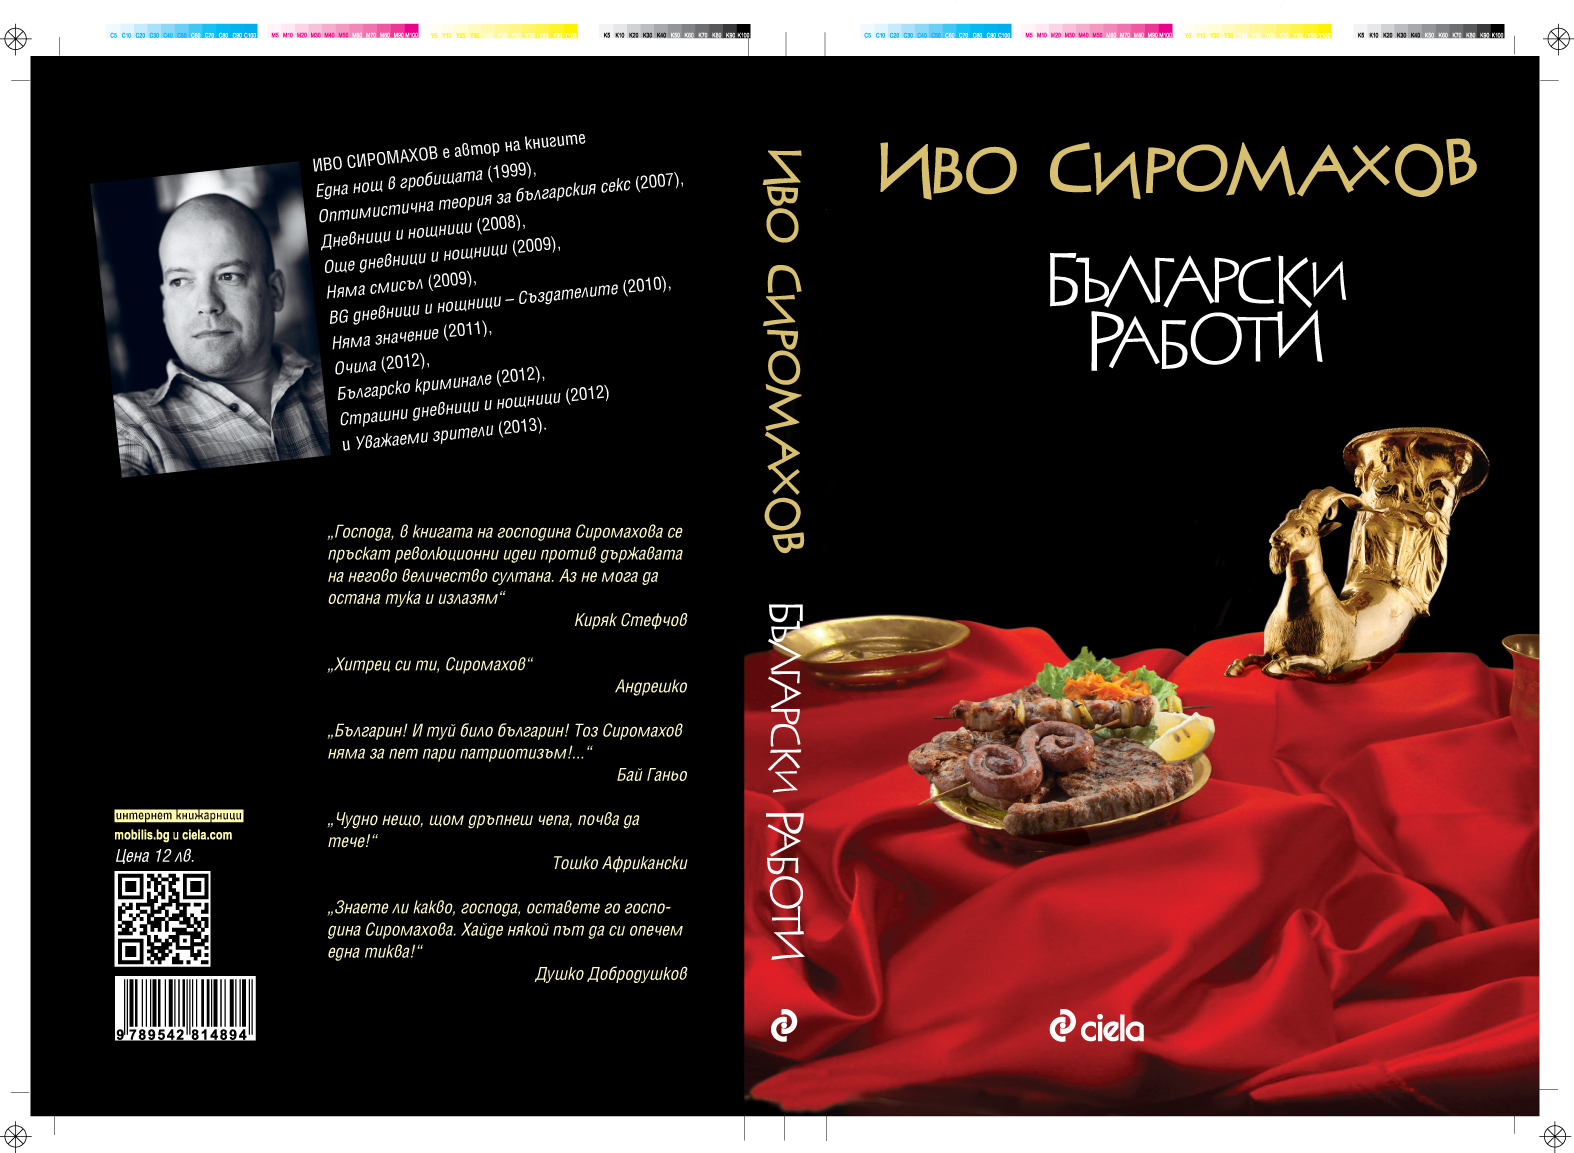 Български работи от Иво Сиромахов, нова книга на Сиела